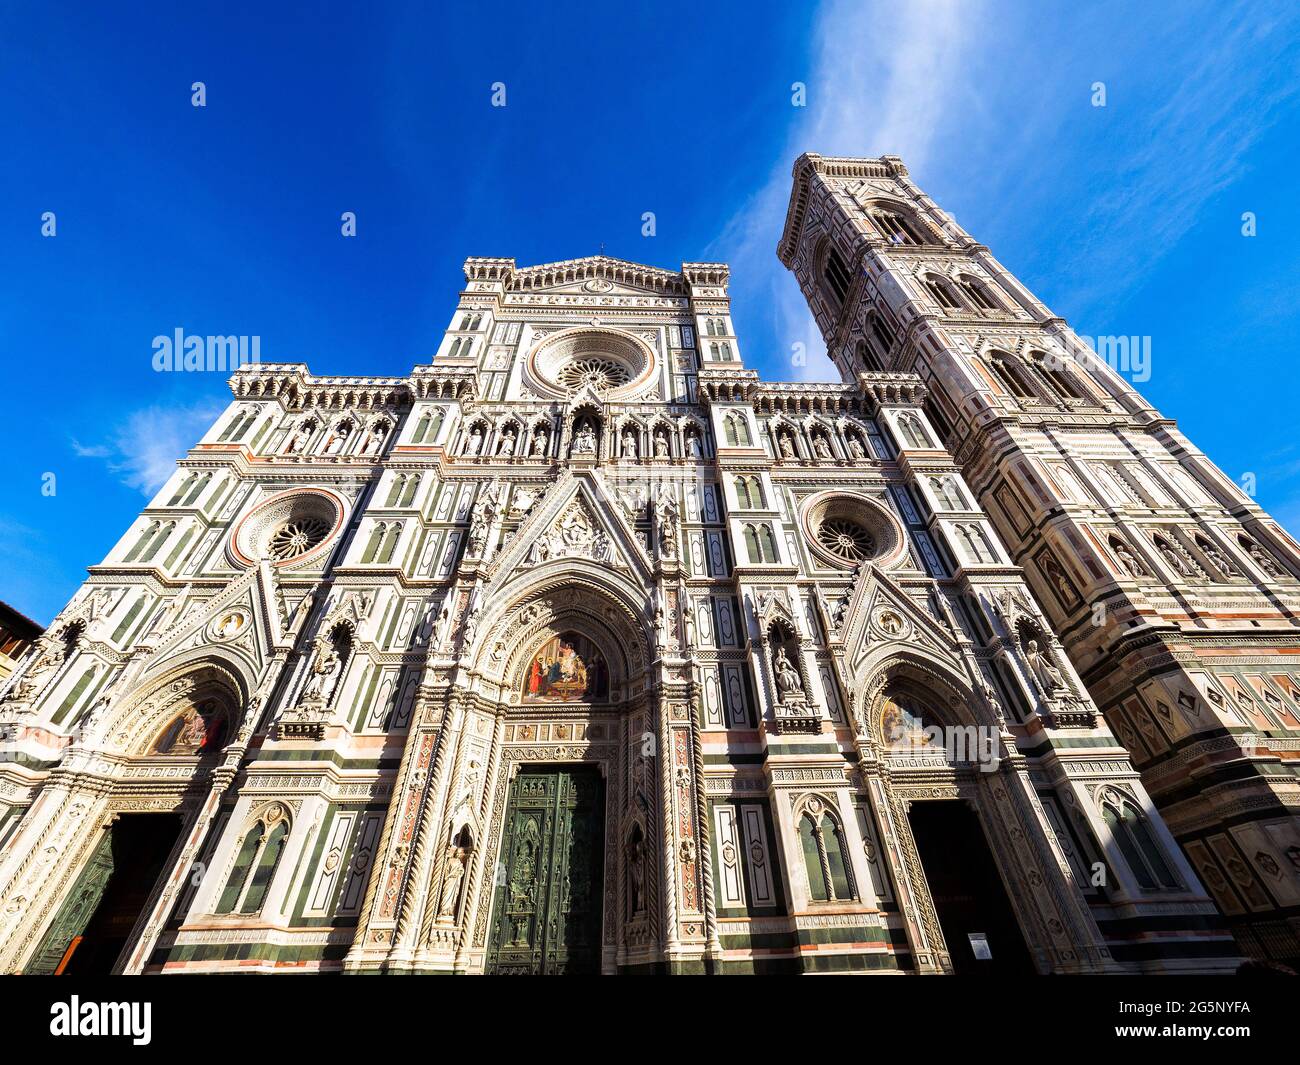 Cattedrale di Santa Maria del Fiore - Florence, Italy Stock Photo